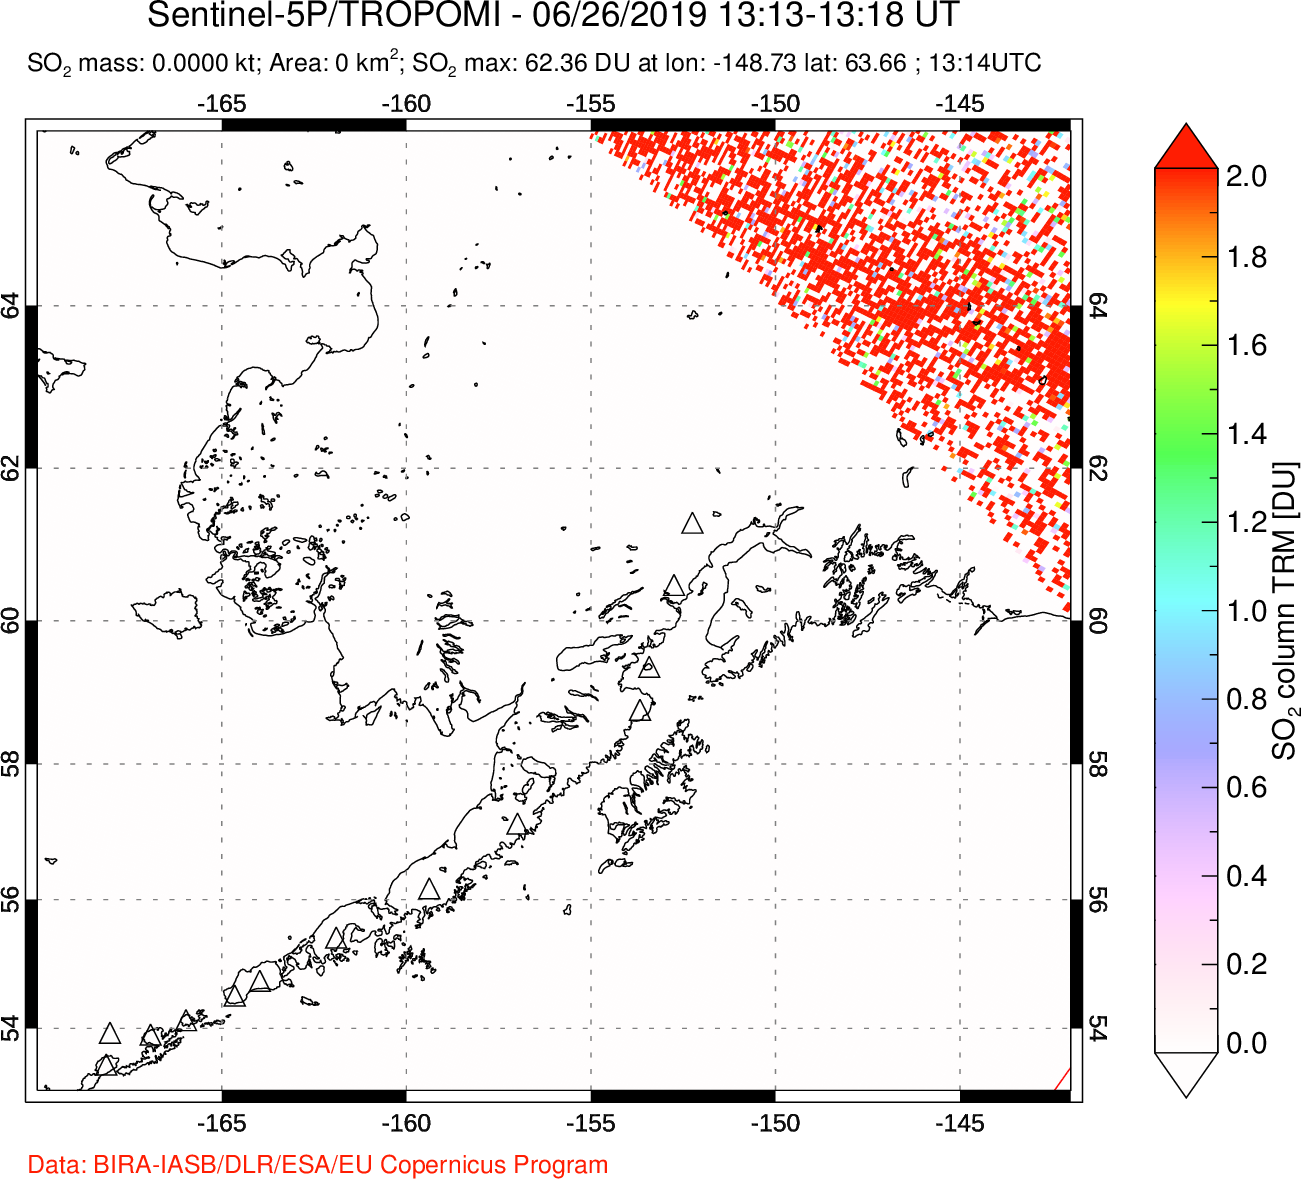 A sulfur dioxide image over Alaska, USA on Jun 26, 2019.